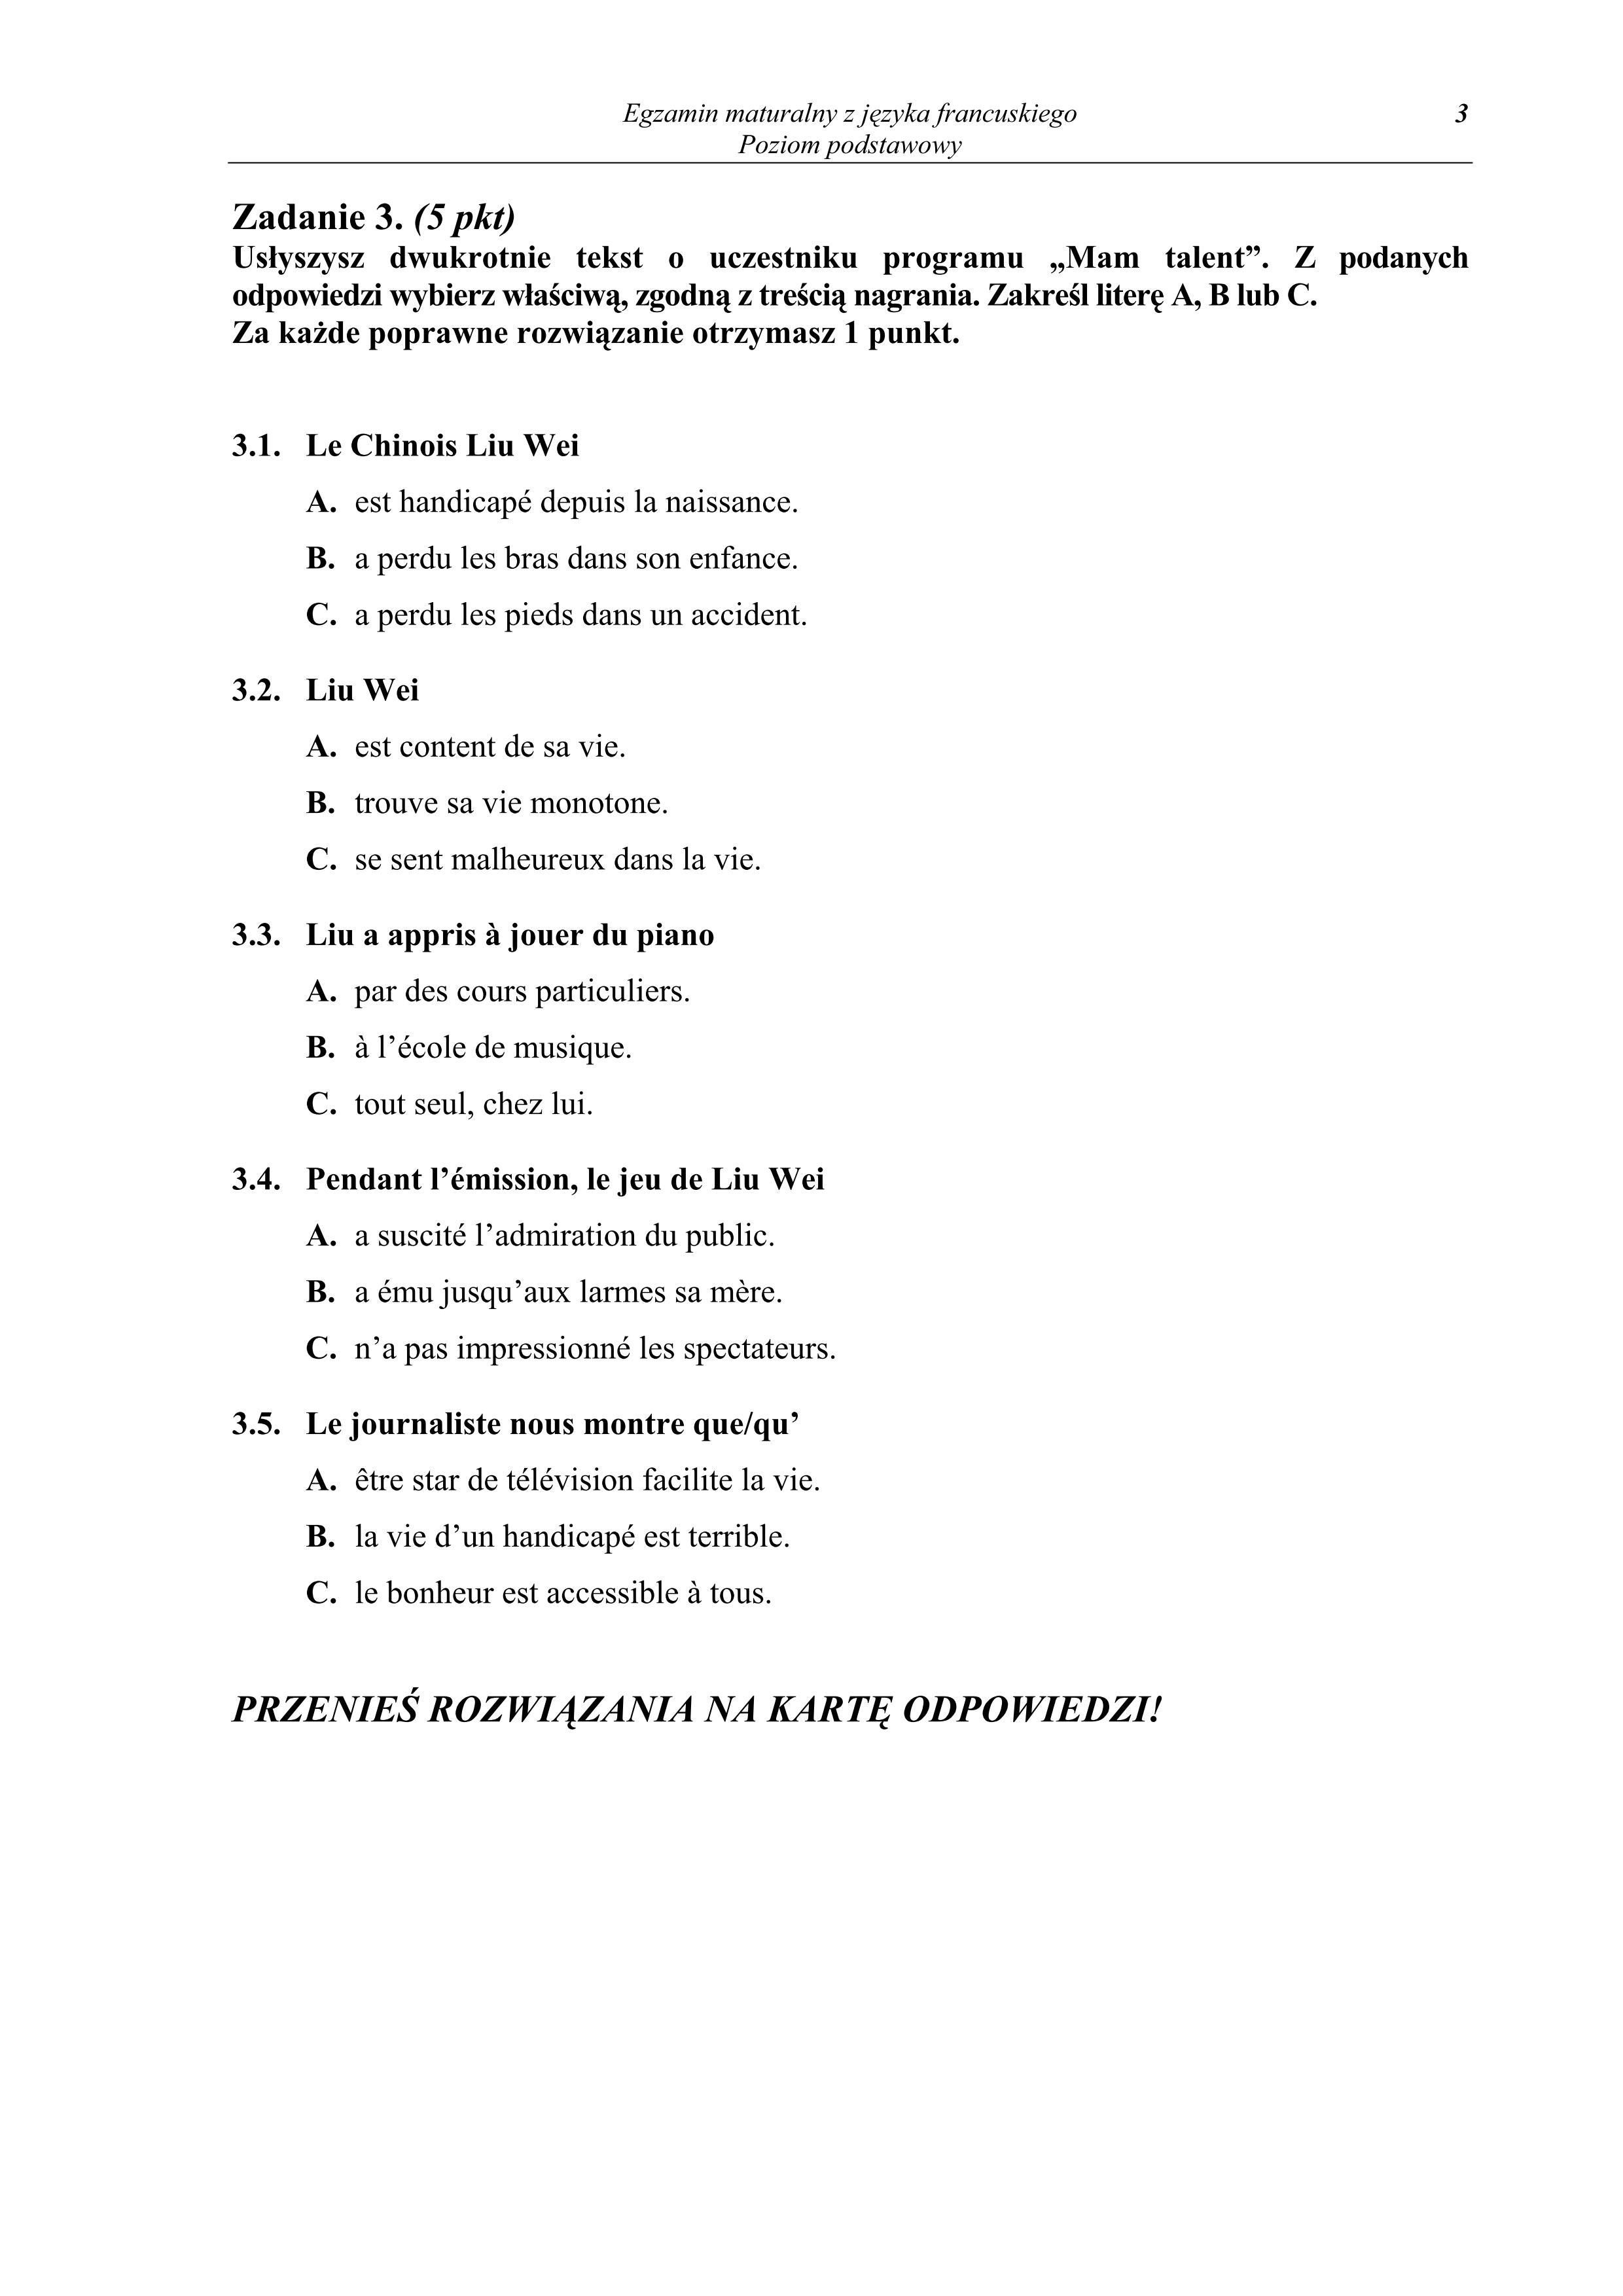 pytania-jezyk-francuski-poziom-podstawowy-matura-2011 - 3